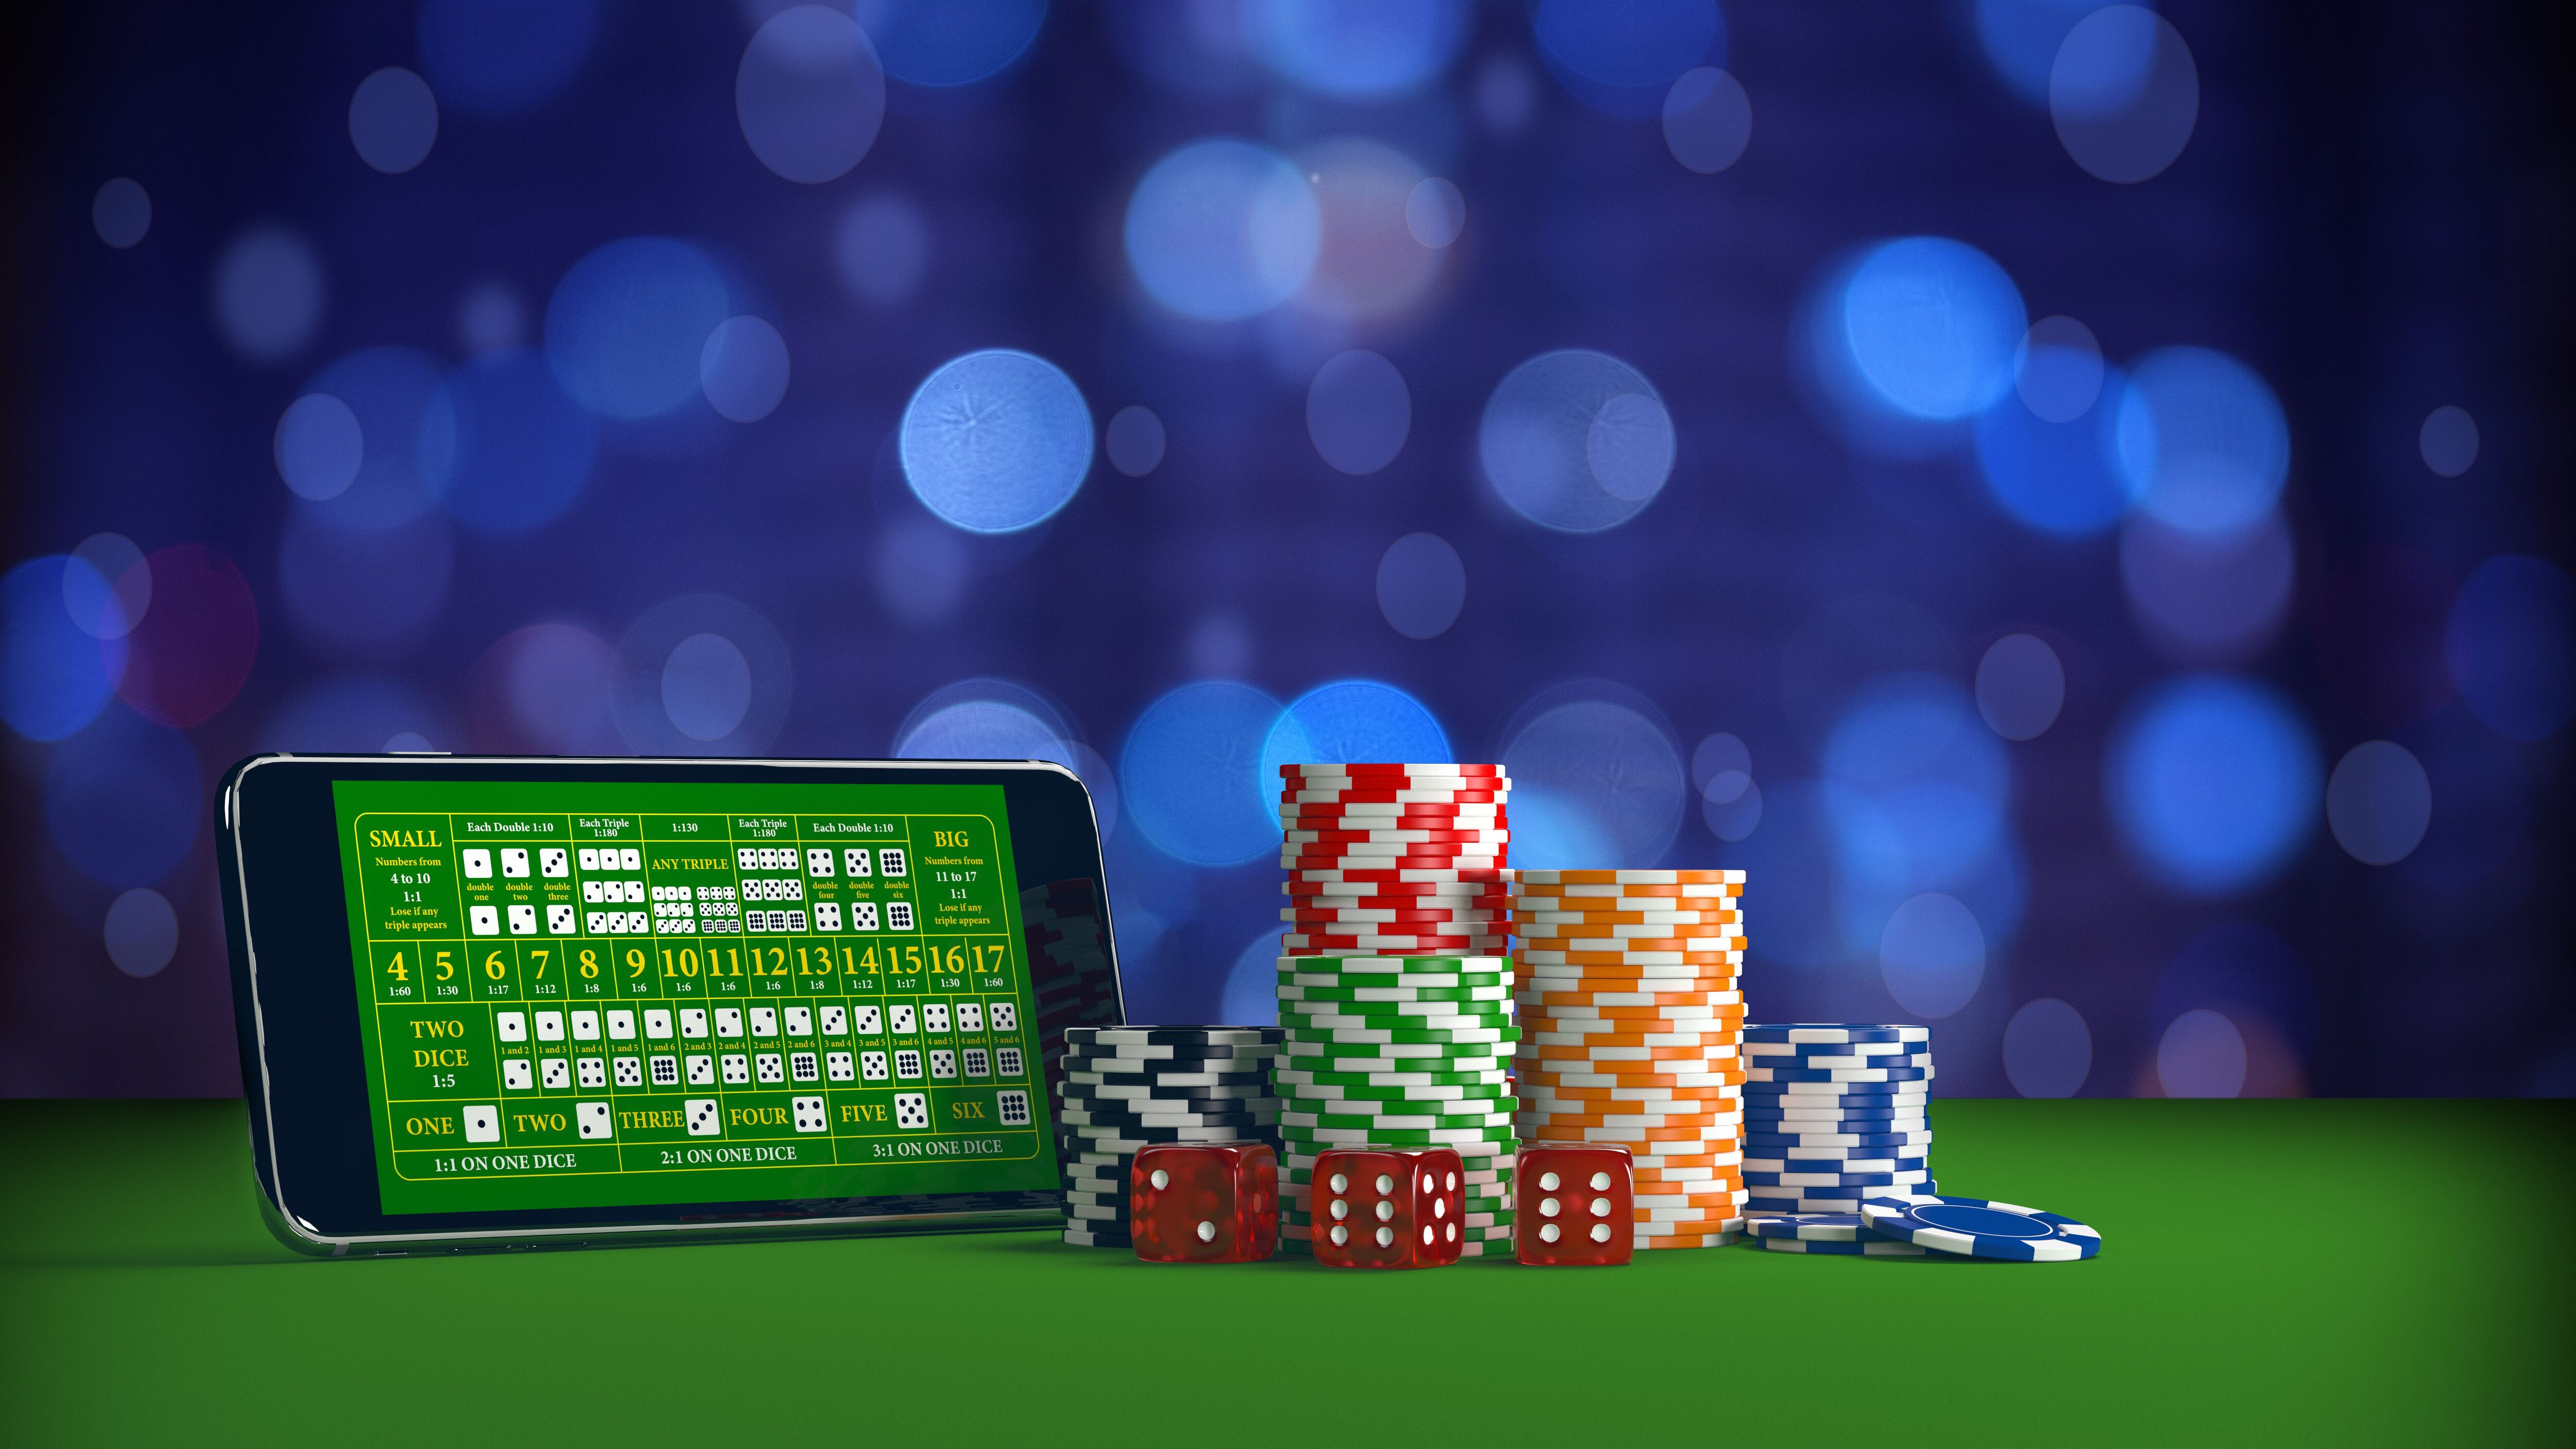 Melhores Bônus de Poker Online no Brasil - Códigos de Bônus e Ofertas